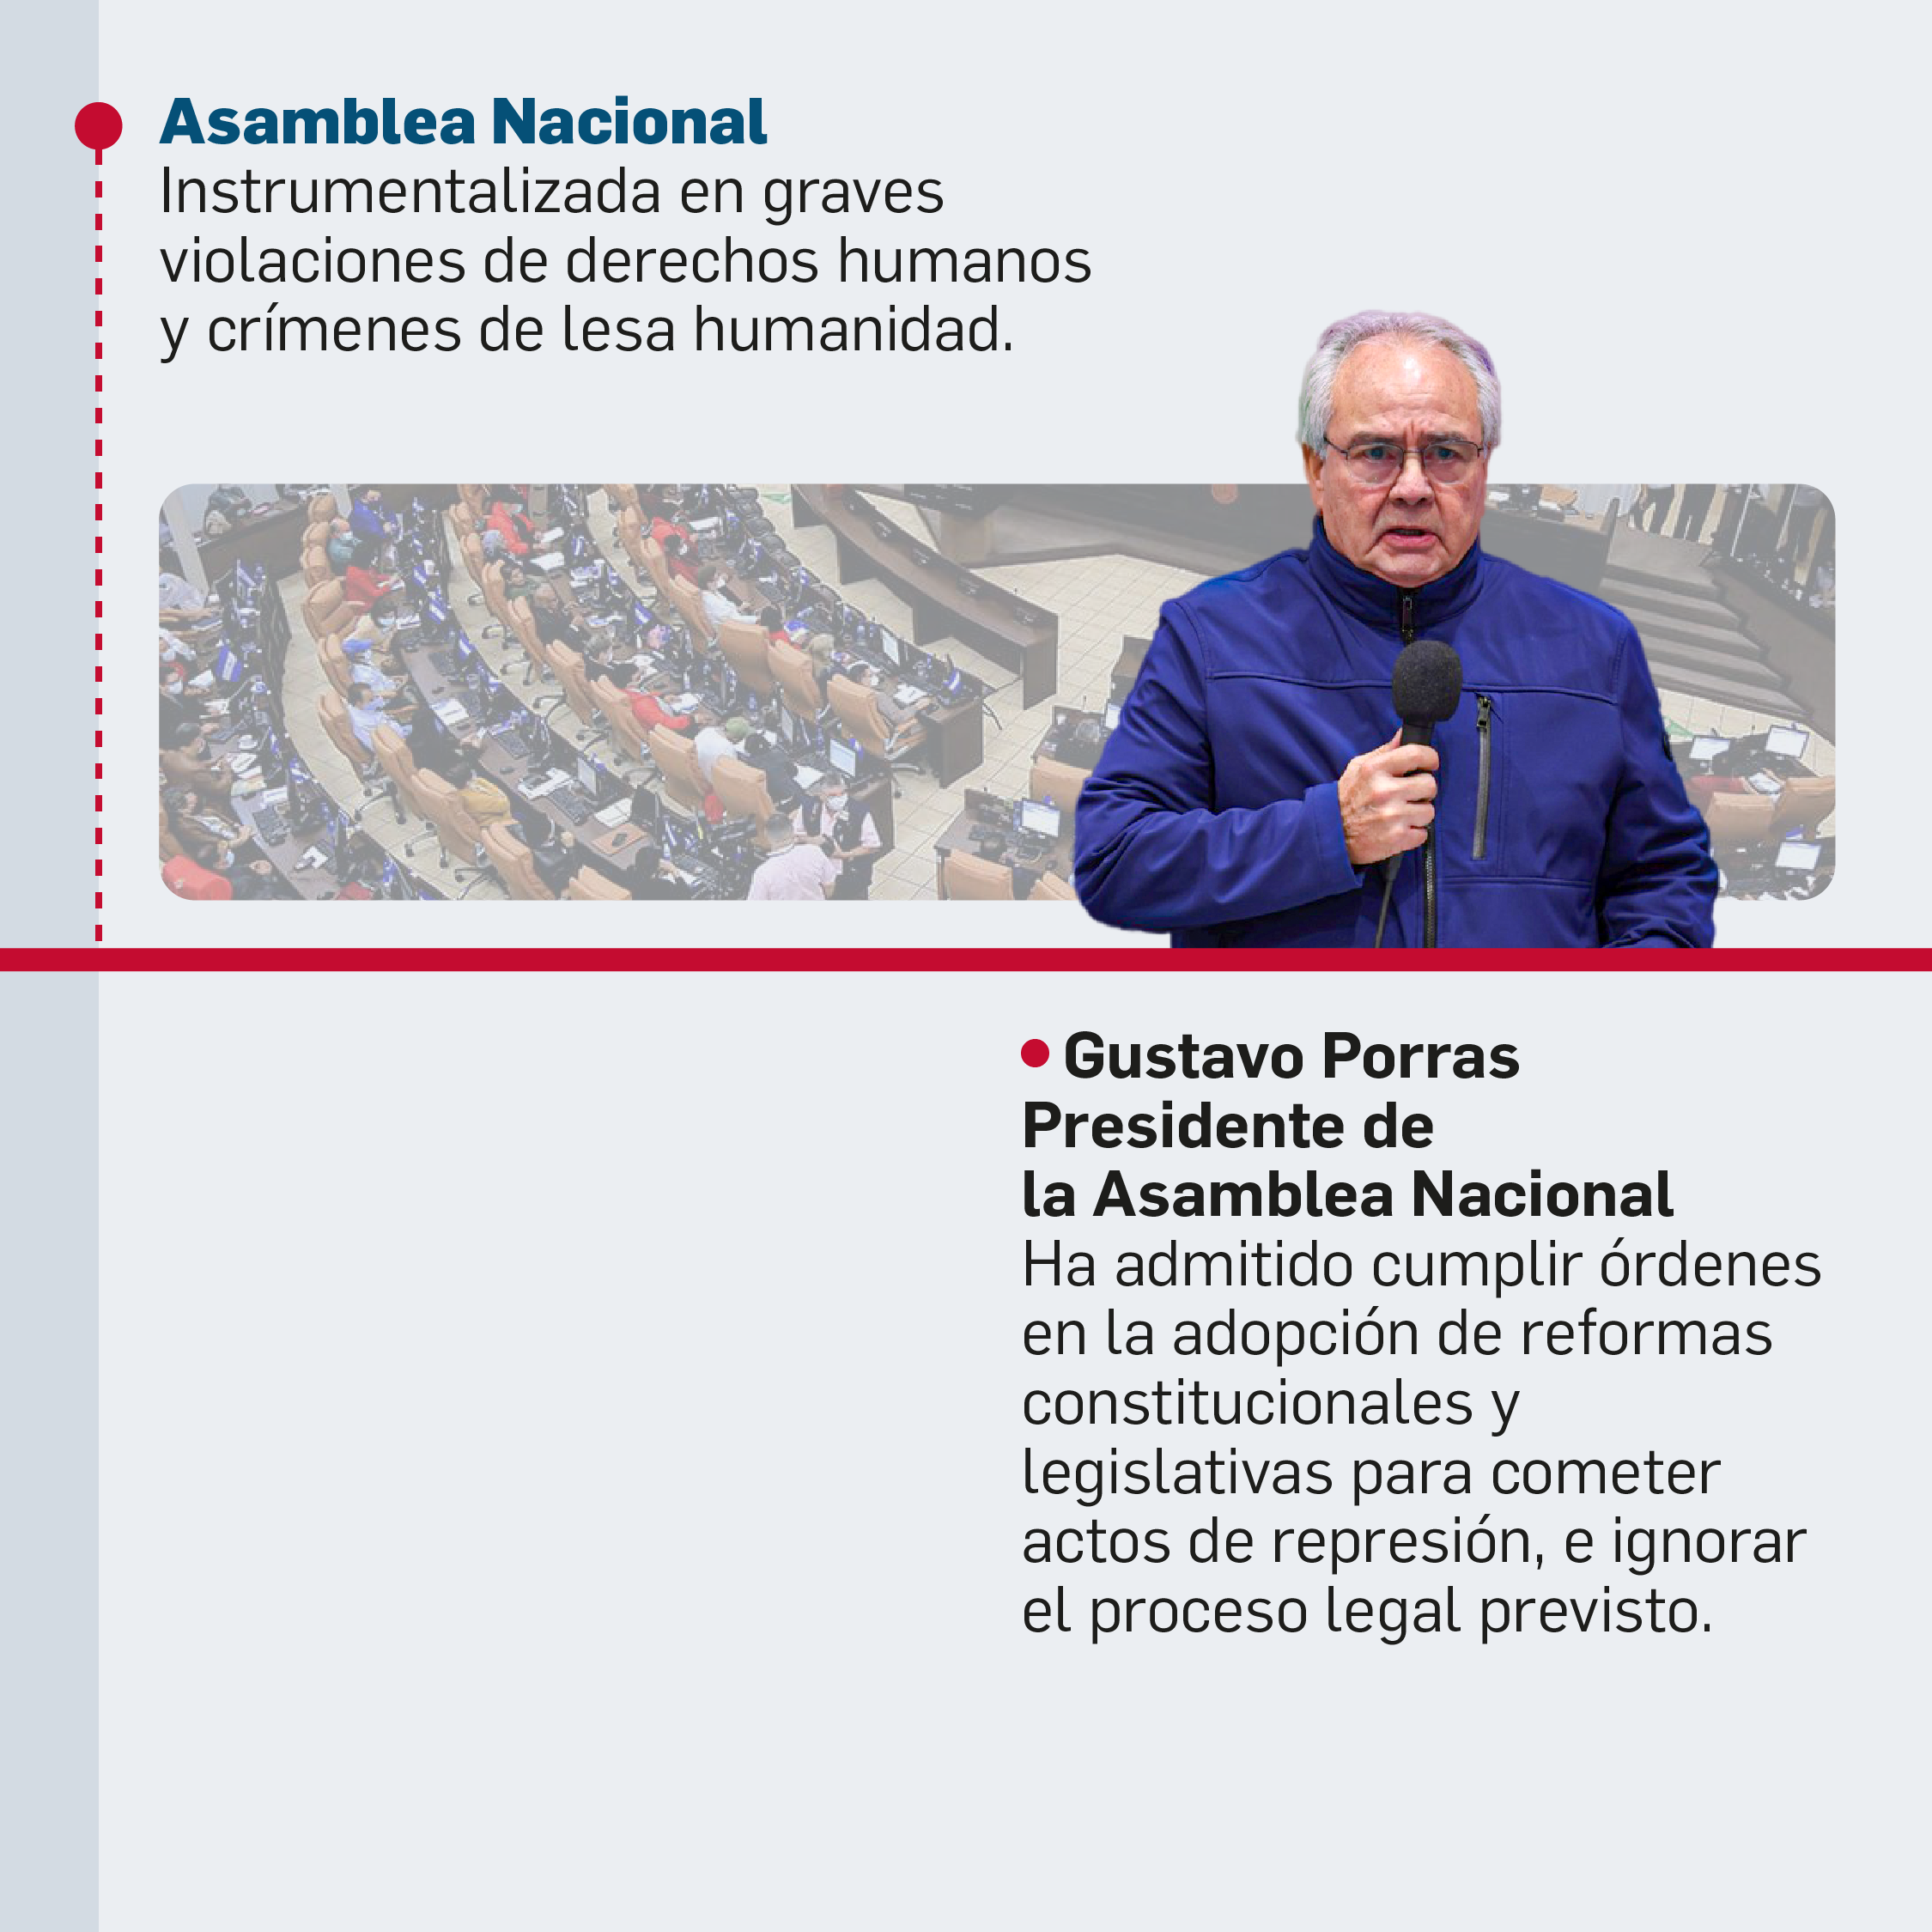 La estructura de poder y cadena de mando de la represión en Nicaragua